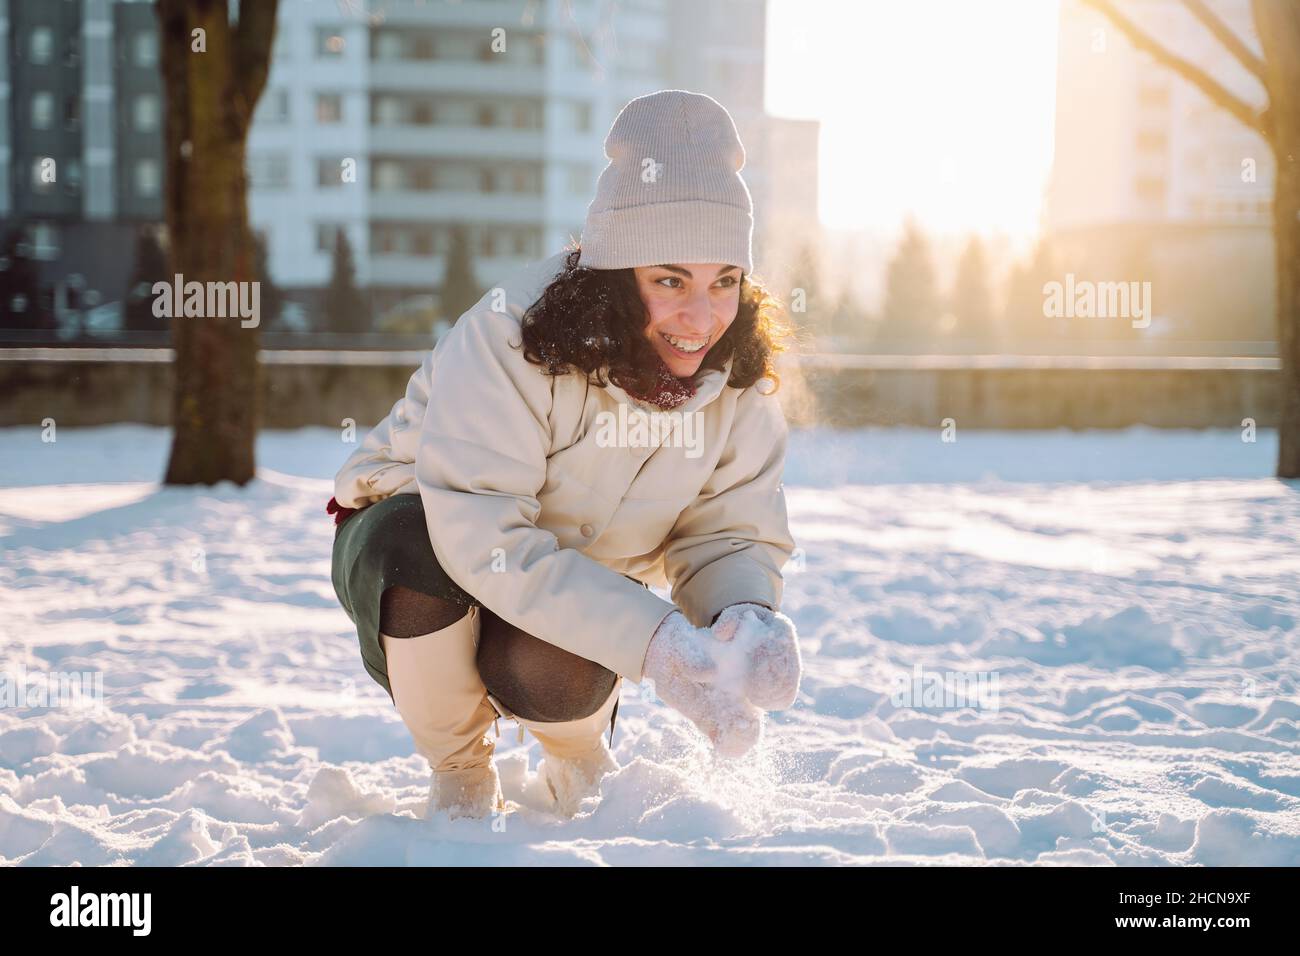 Souriante jeune femme se moque de jouer avec la neige en portant des vêtements blancs chauds dans un parc hivernal enneigé.Profiter de la nature, des vacances d'hiver, des émotions positives Banque D'Images